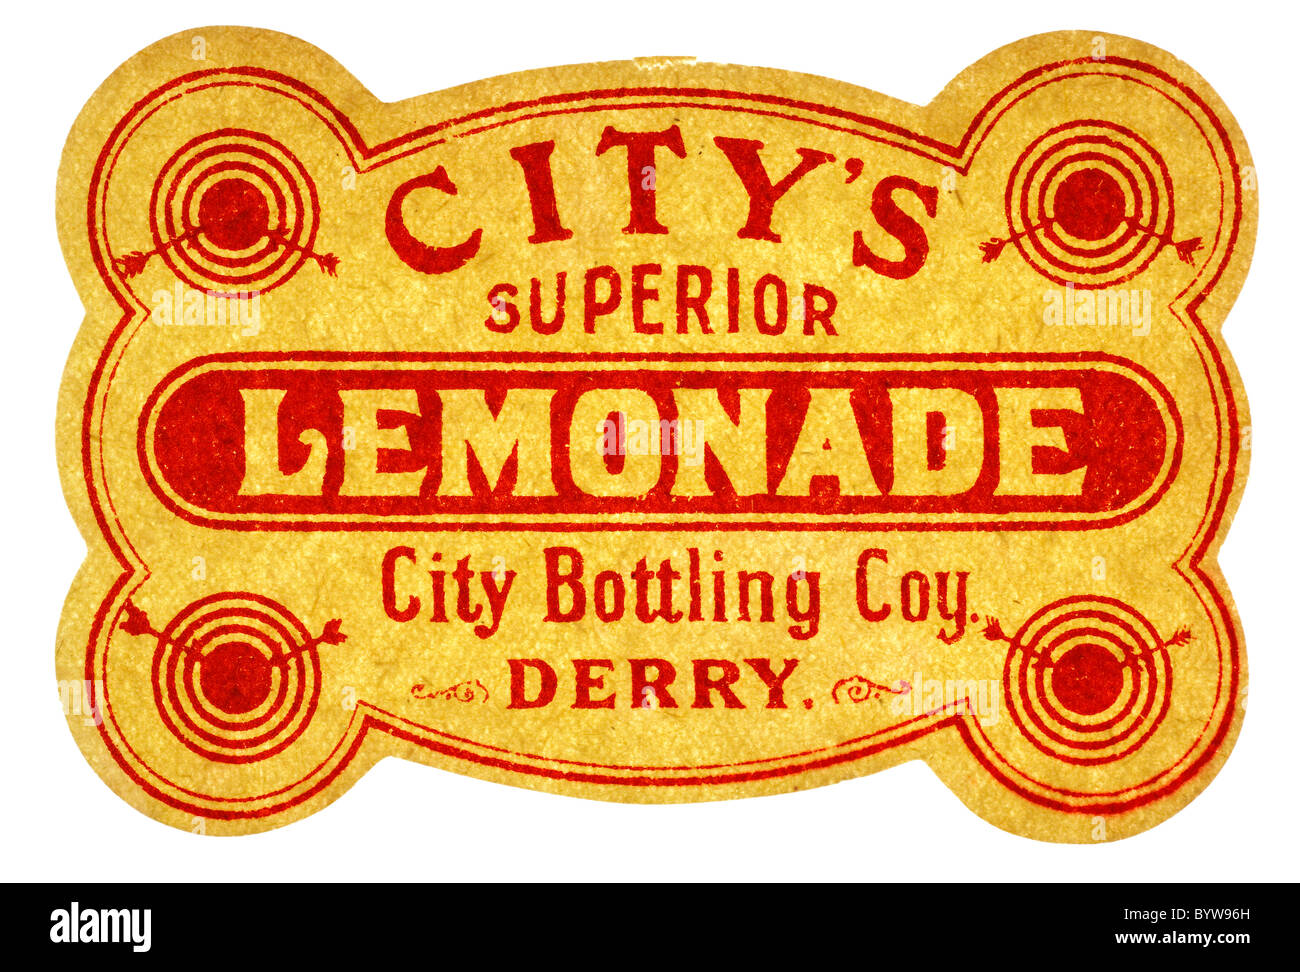 Vecchia carta pop etichetta per la limonata Superior da città imbottigliamento Coy Derry. Solo editoriale Foto Stock